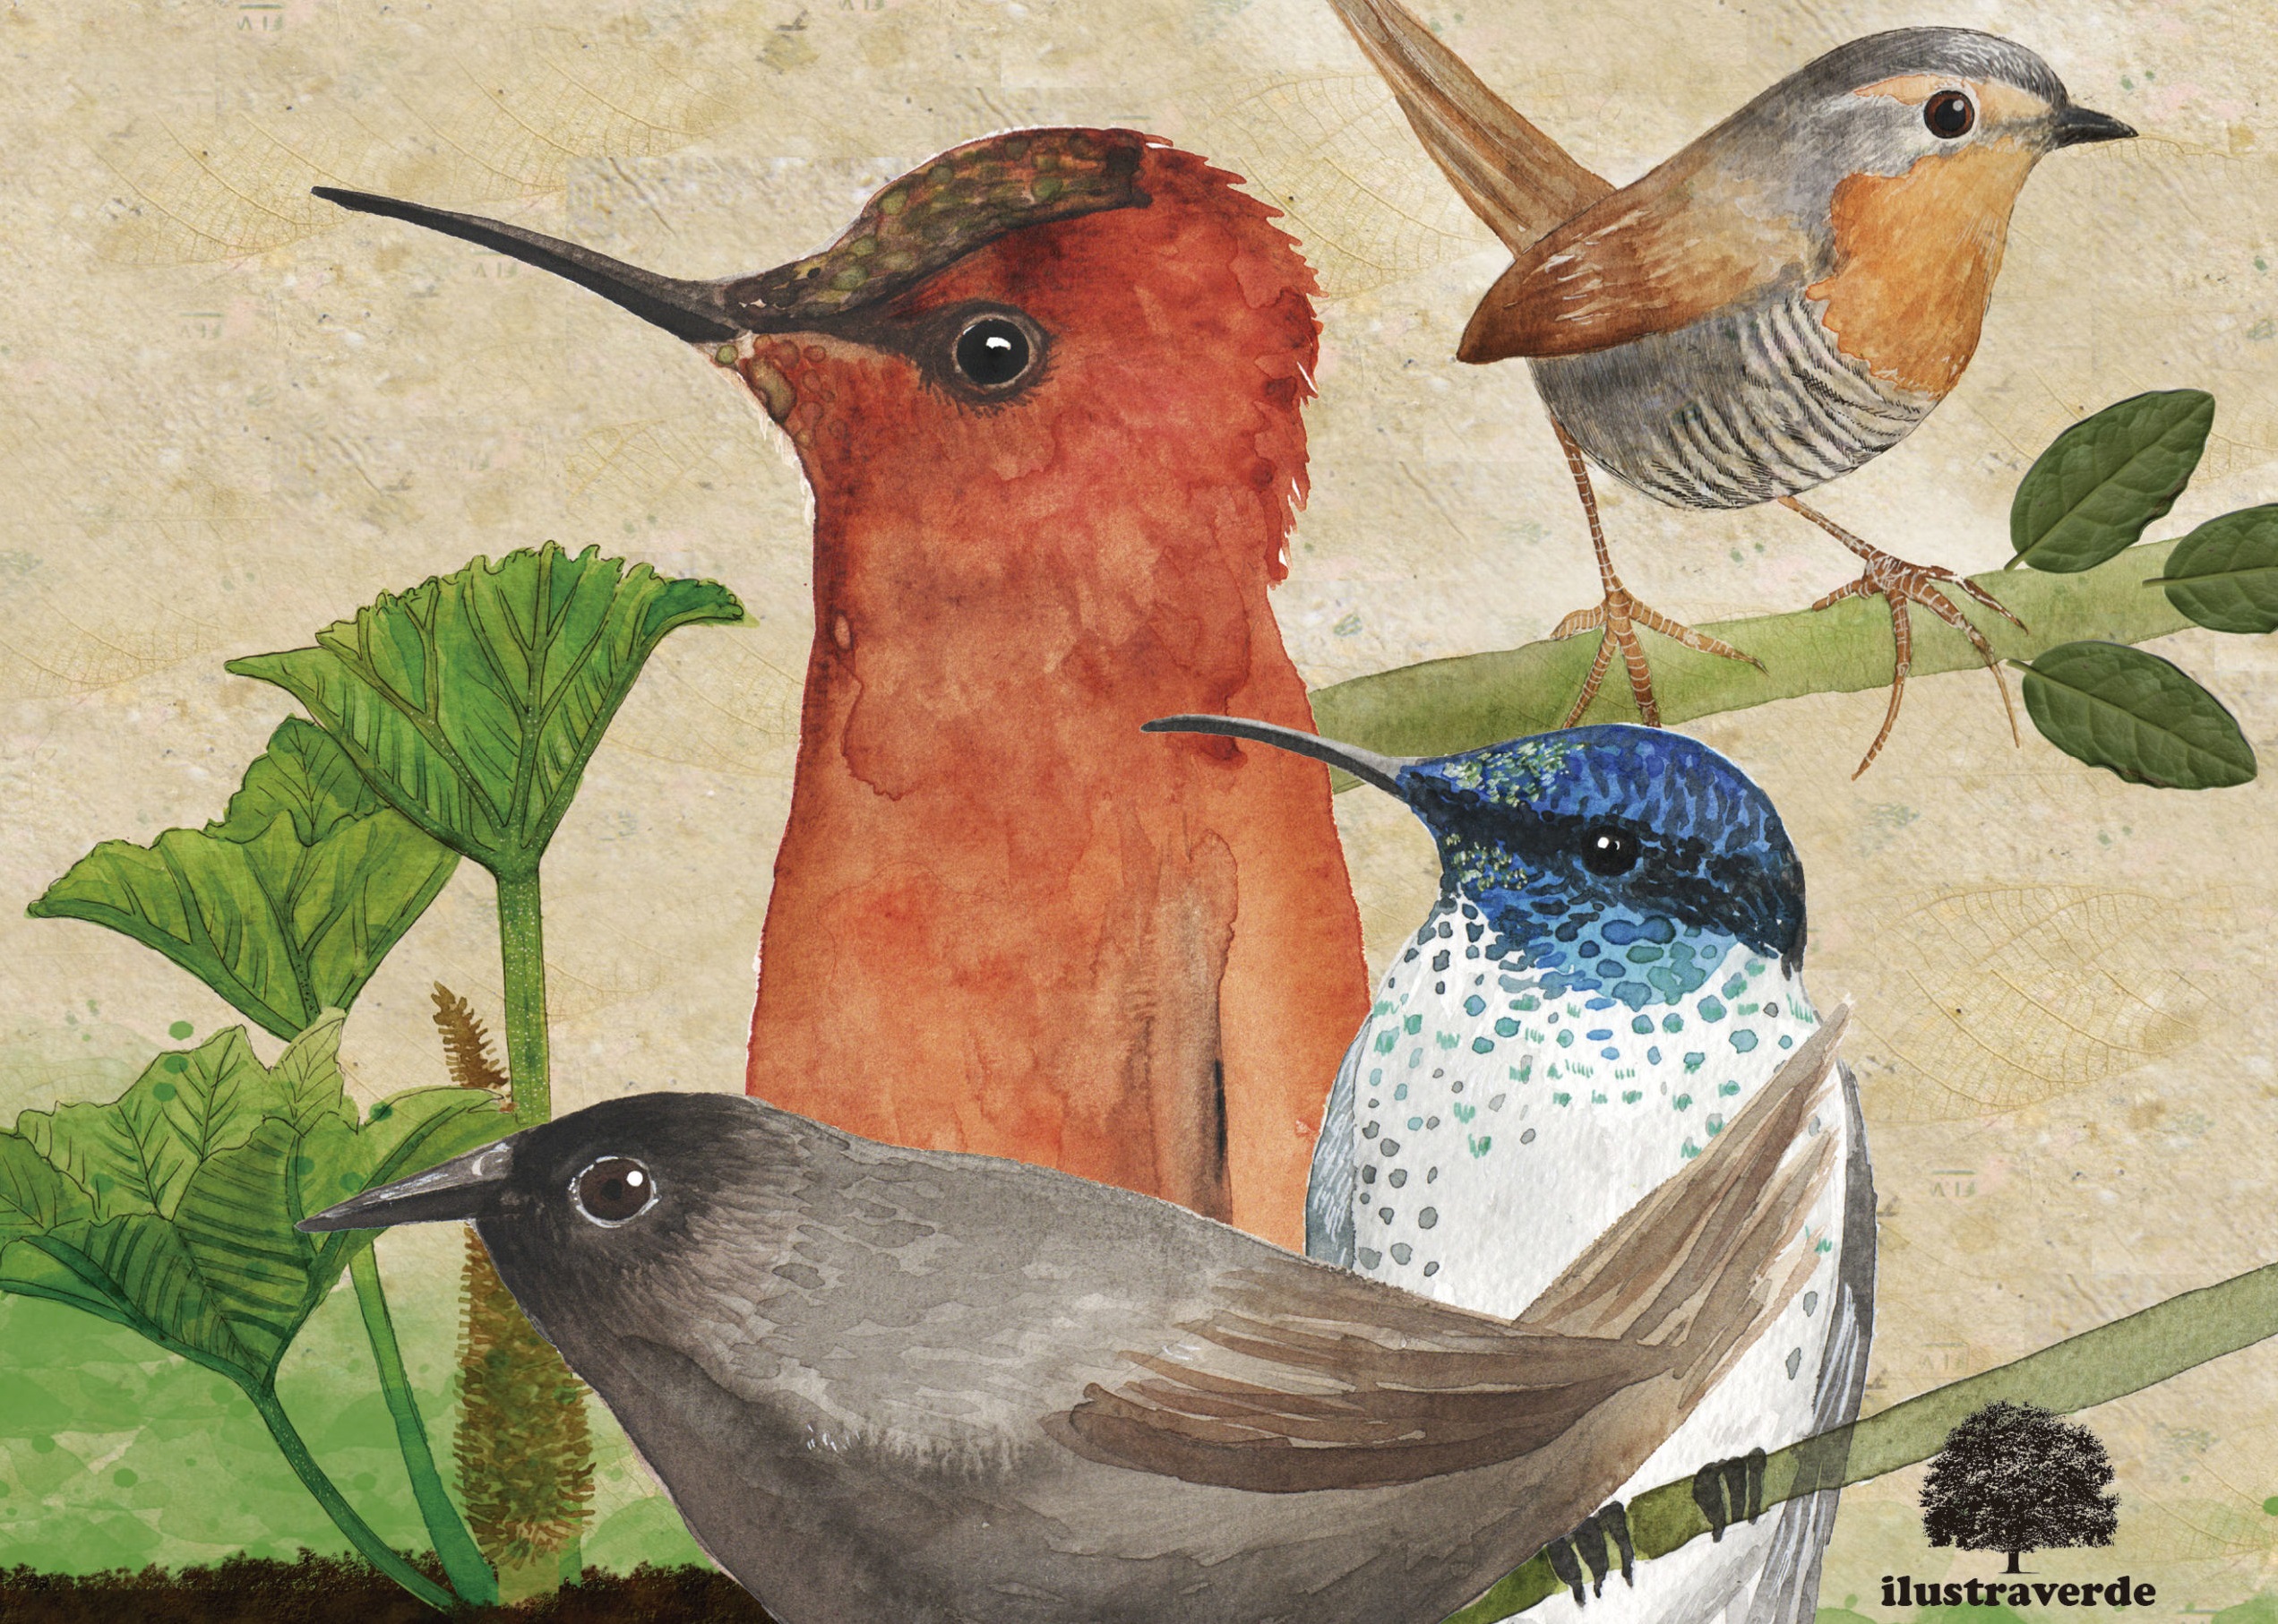 Libro sobre aves endémicas de Chile se presentará este jueves en Centex